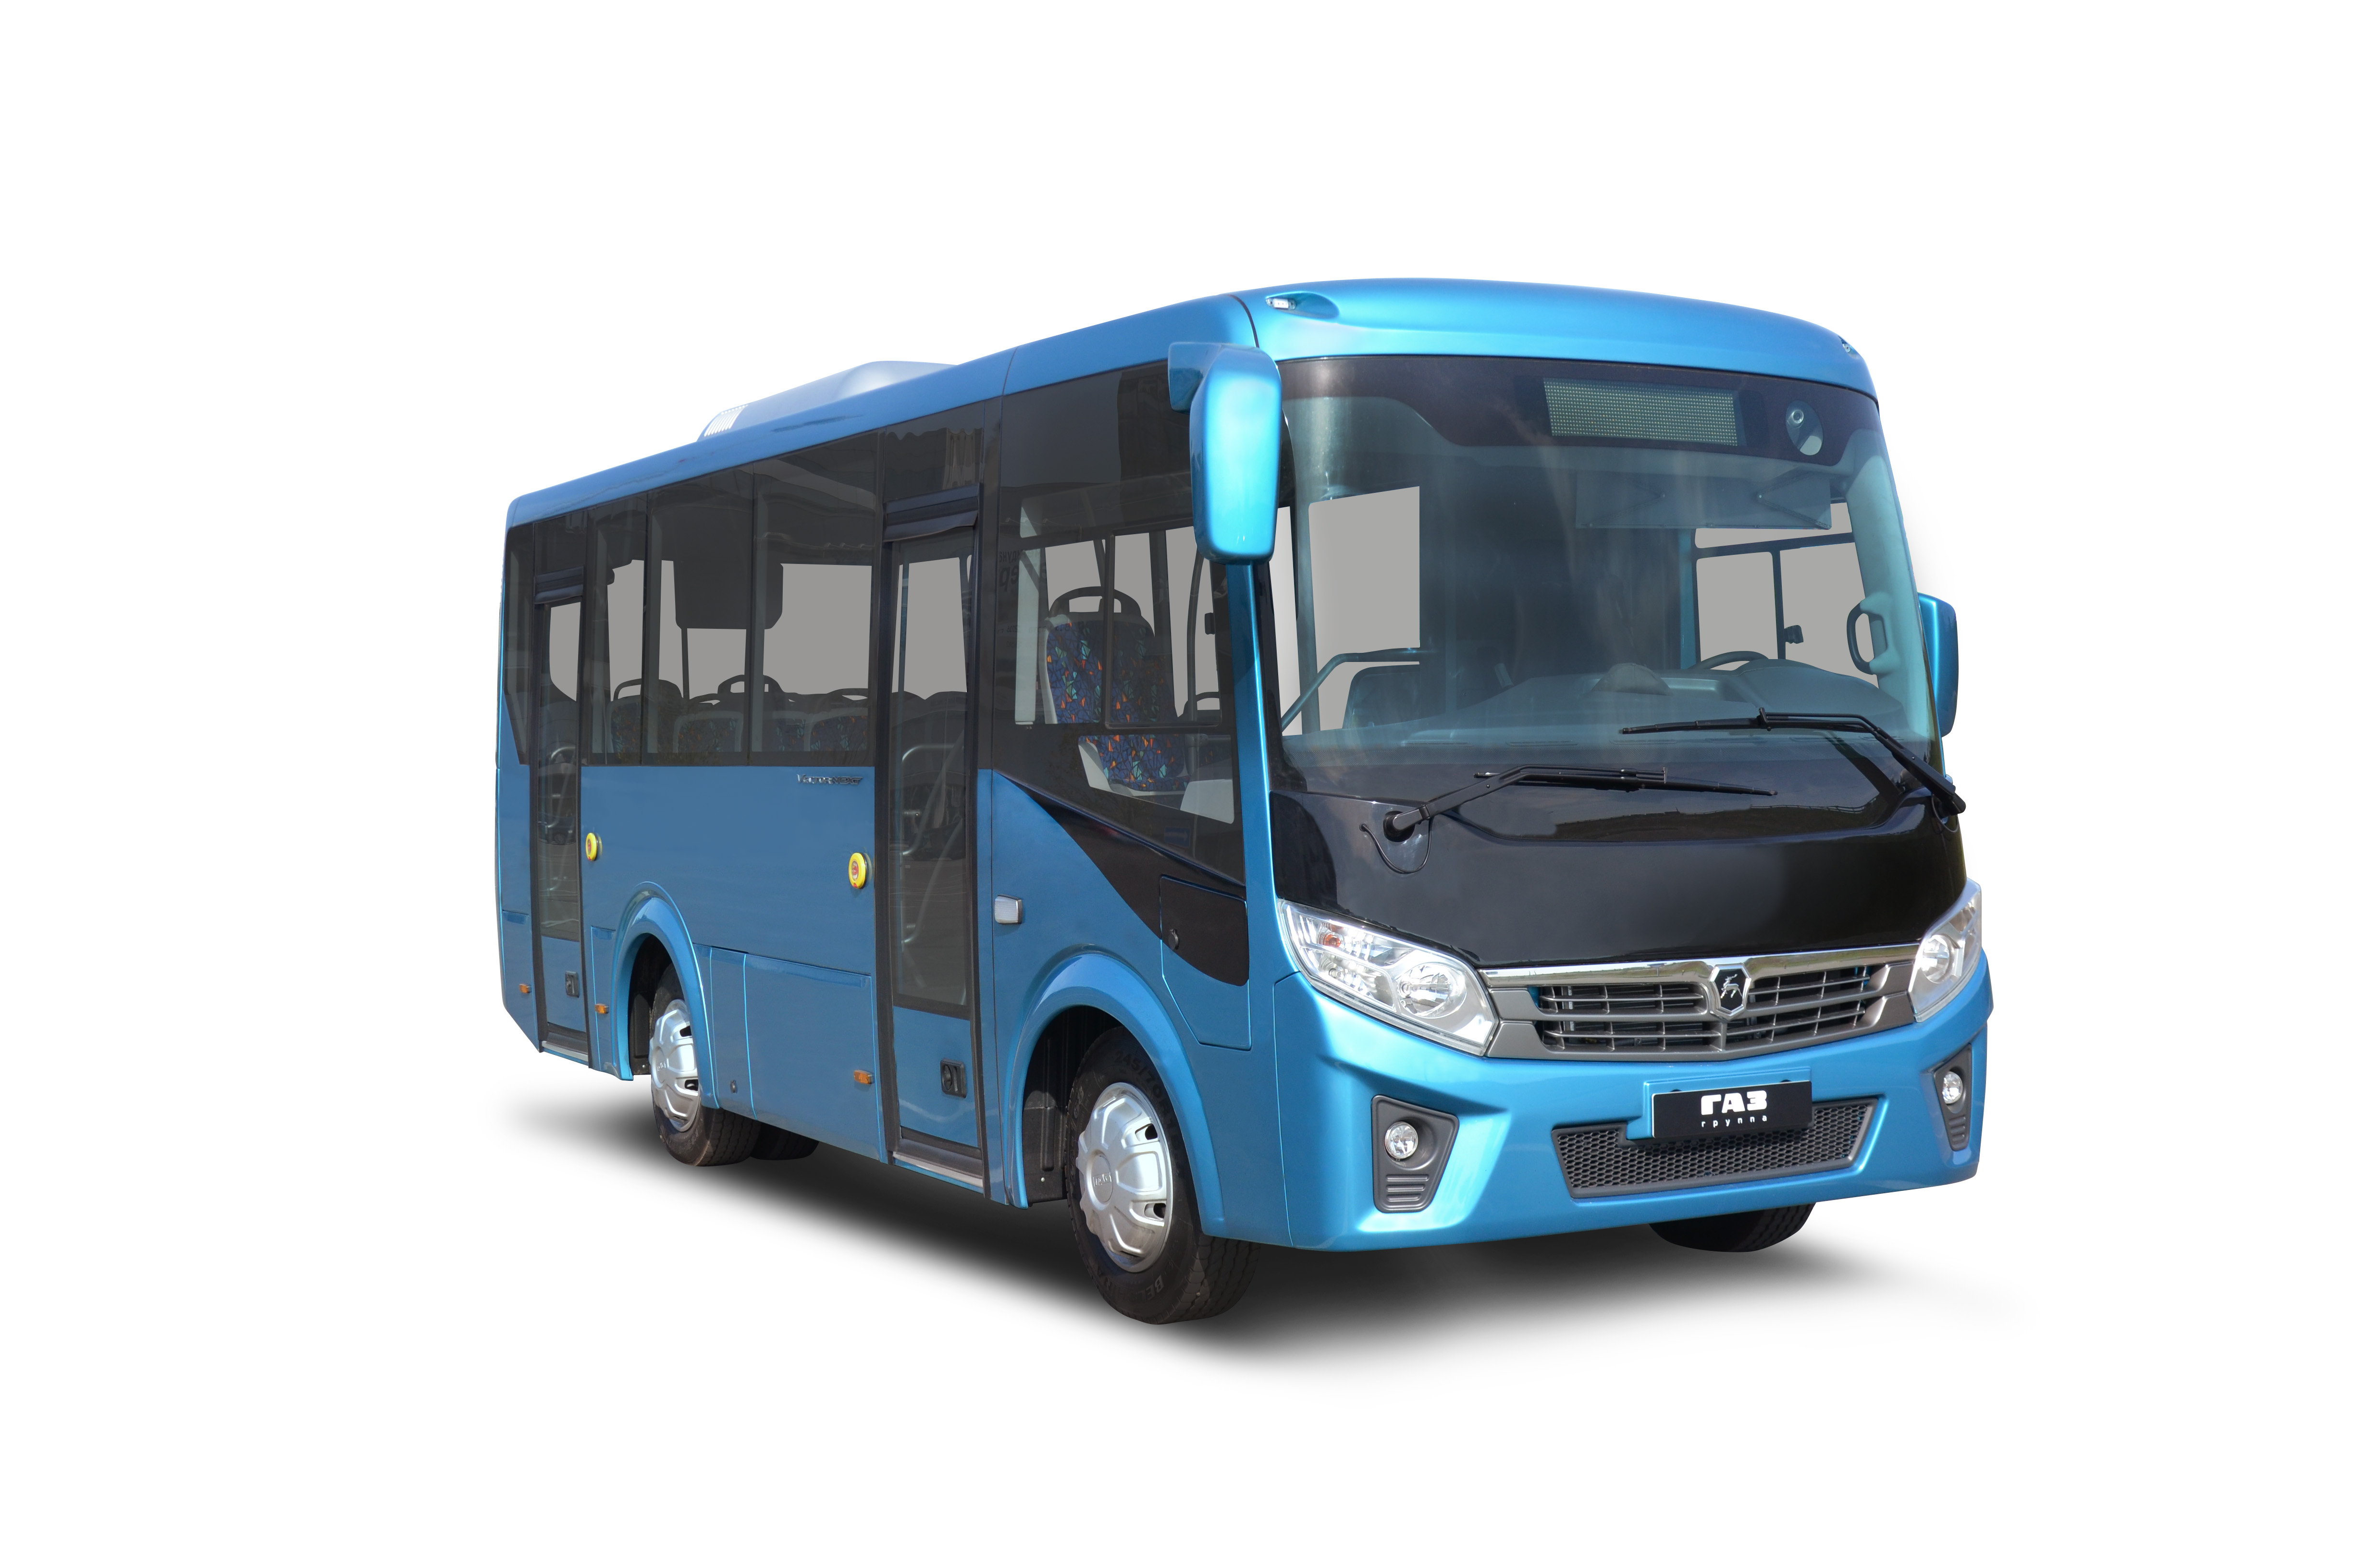 Газ паз автобус. ПАЗ вектор Некст 7.6. Автобус ПАЗ 320405-04 вектор next. Автобус ГАЗ вектор Некст. ПАЗ-320405-04 vector next.